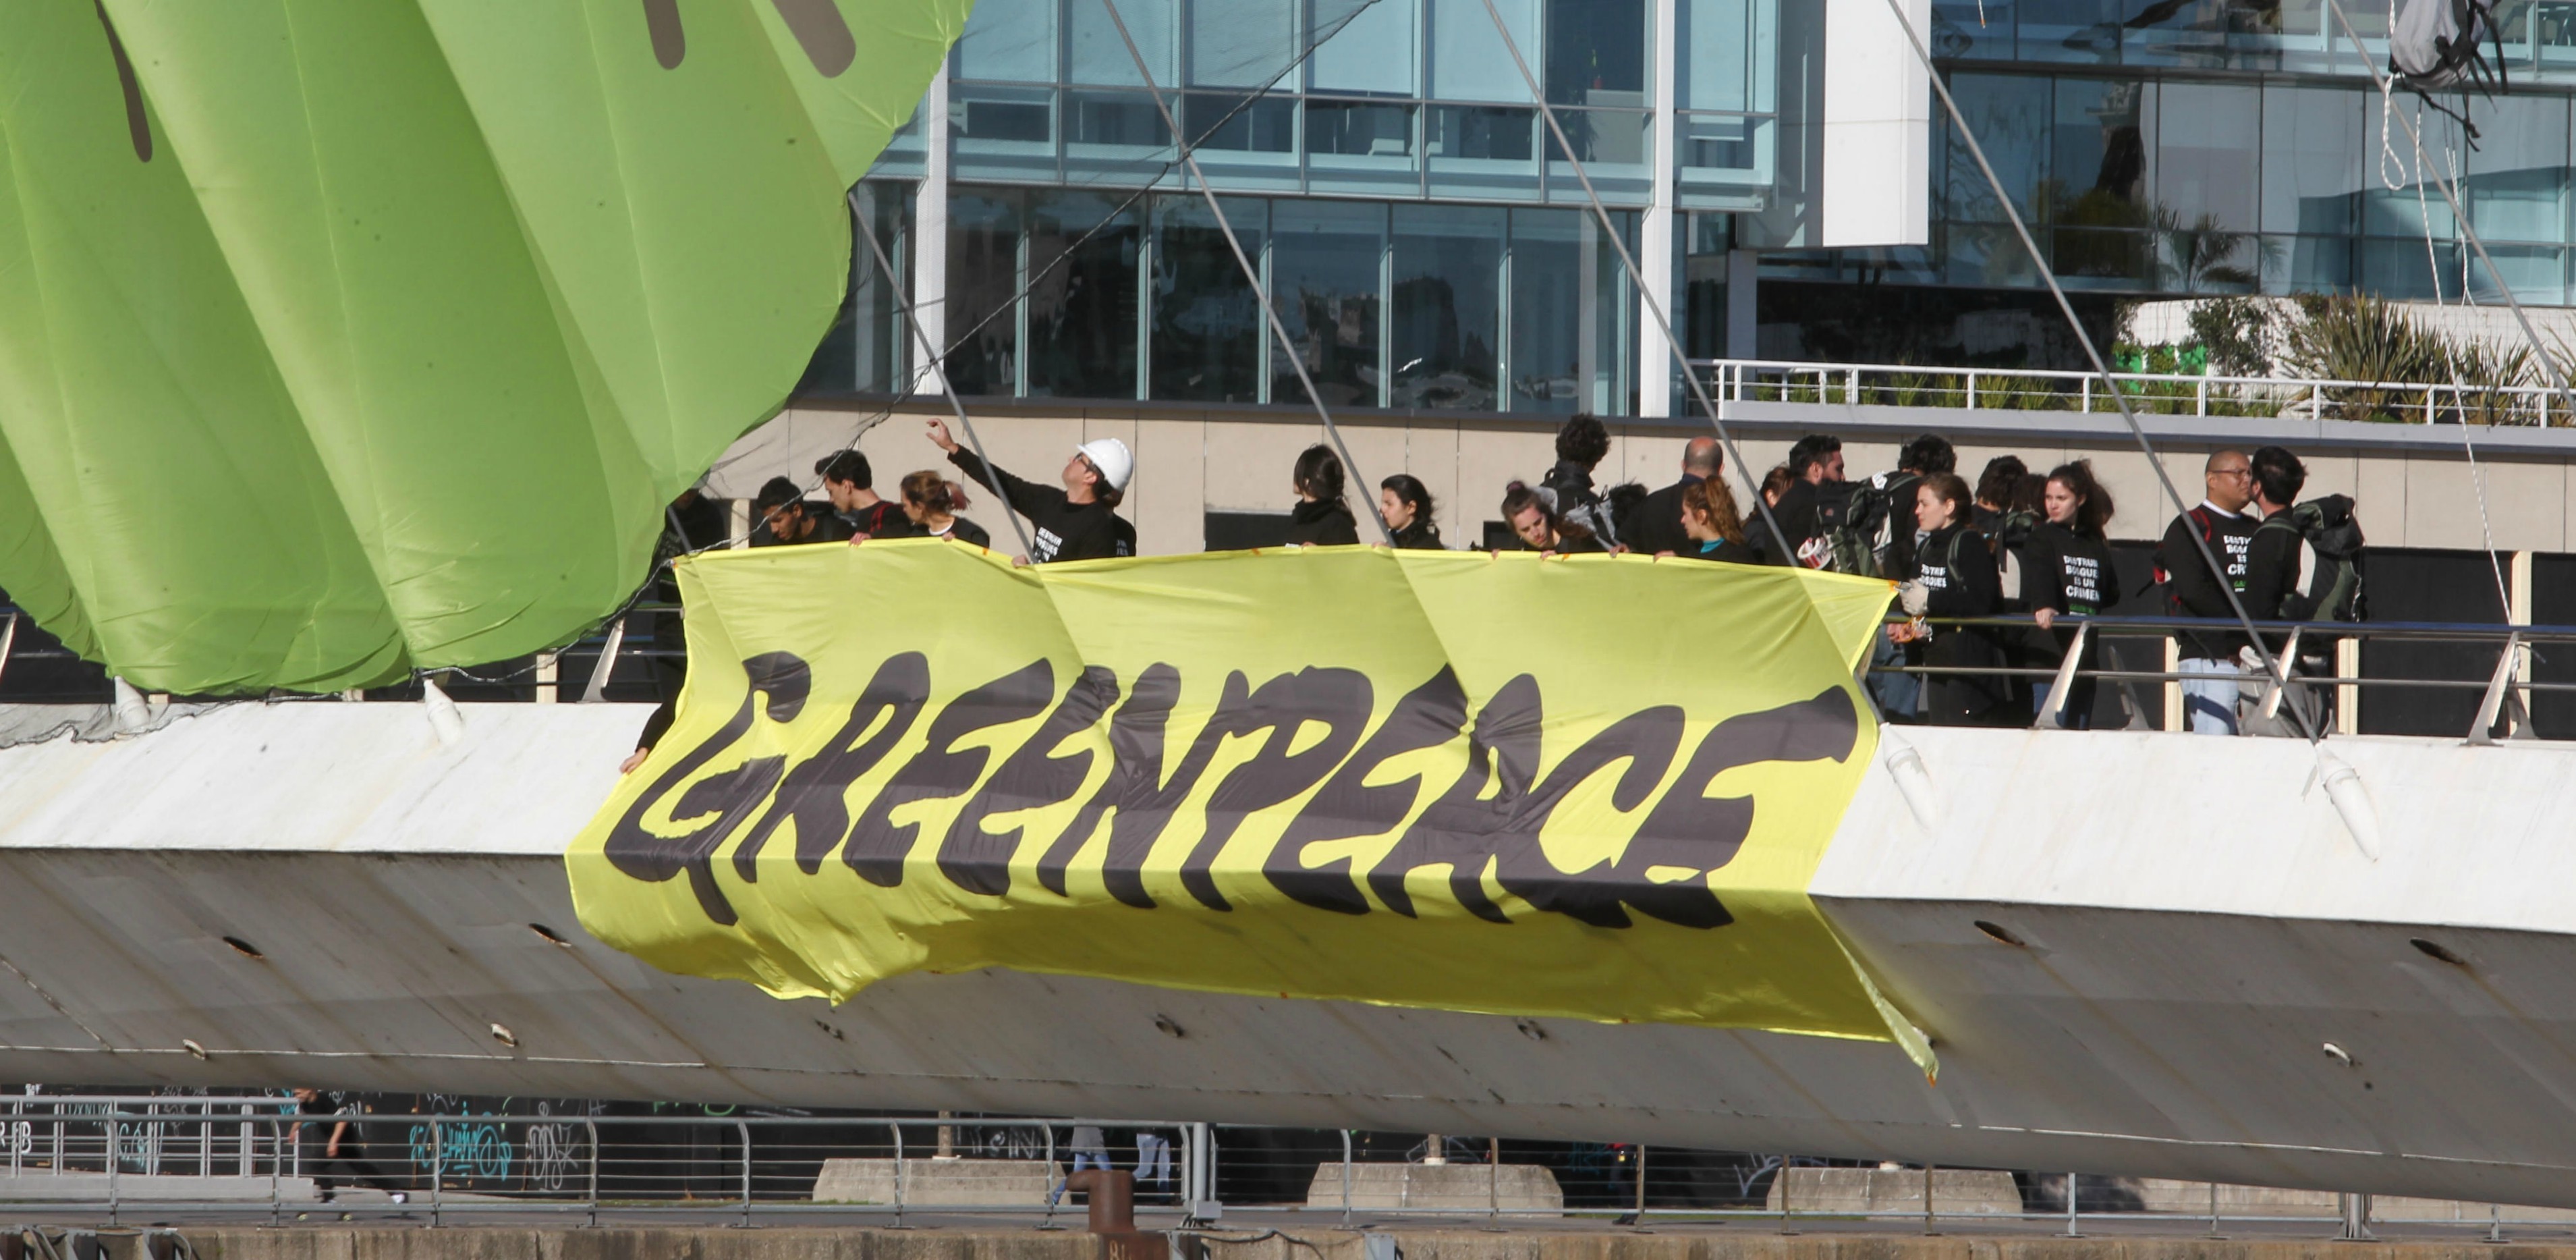 Slovacchia, 12 attivisti di Greenpeace rischiano condanna fino a 5 anni per manifestazione pacifica